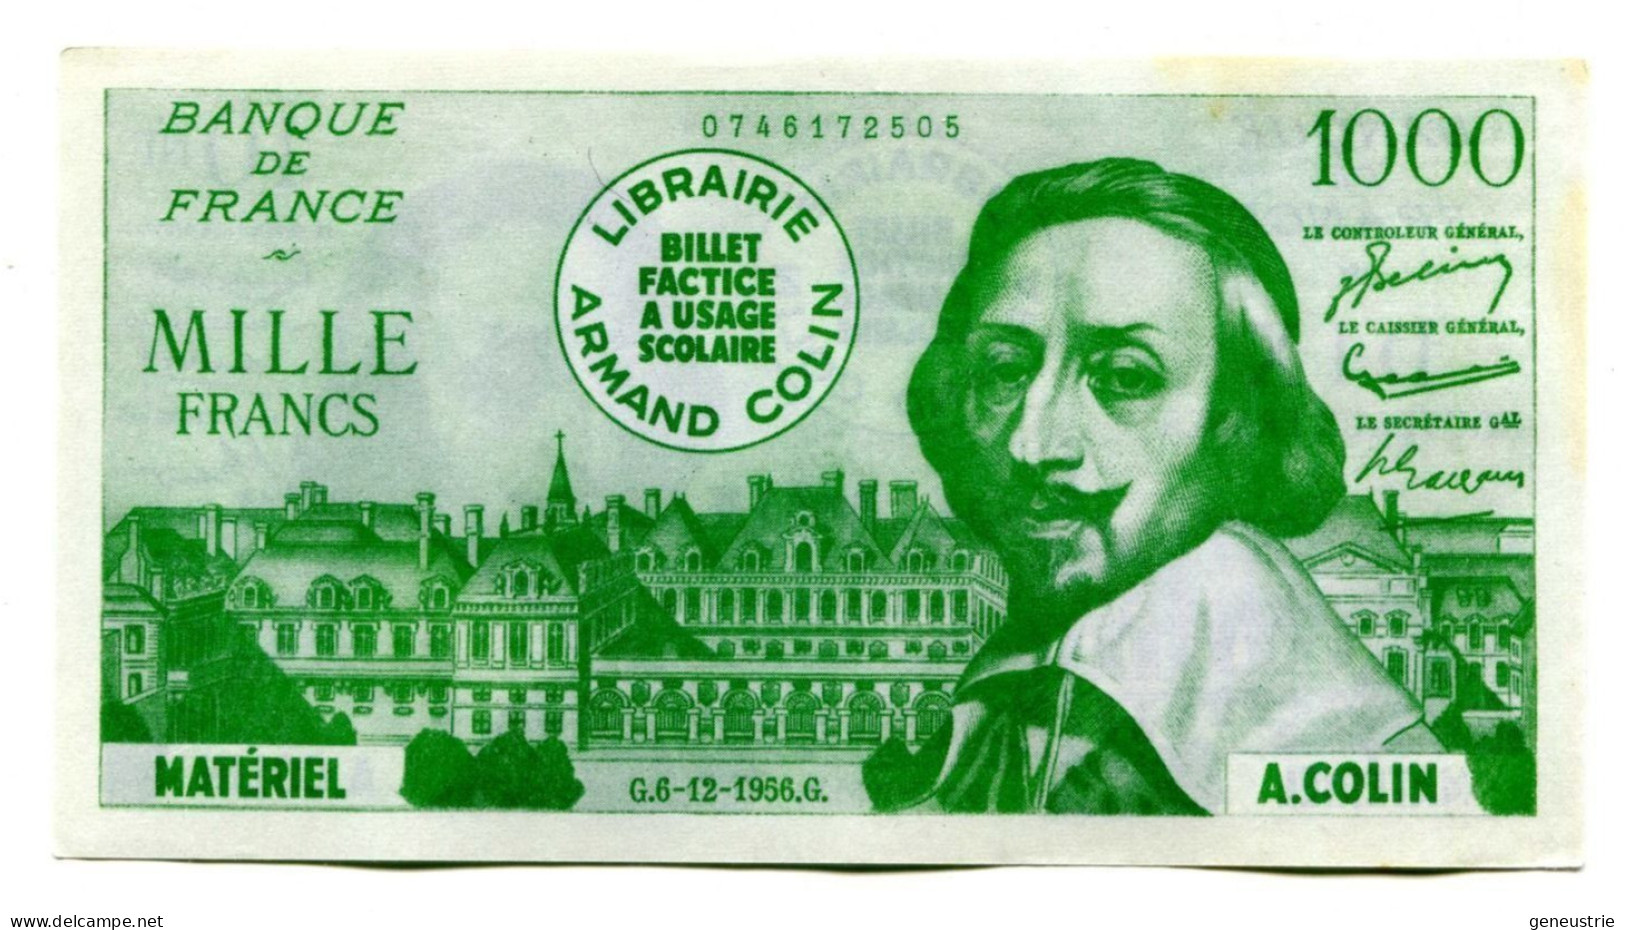 Billet Scolaire école (1000F / 10NF Richelieu) 1959 - Armand Colin - School Bank Note - Specimen